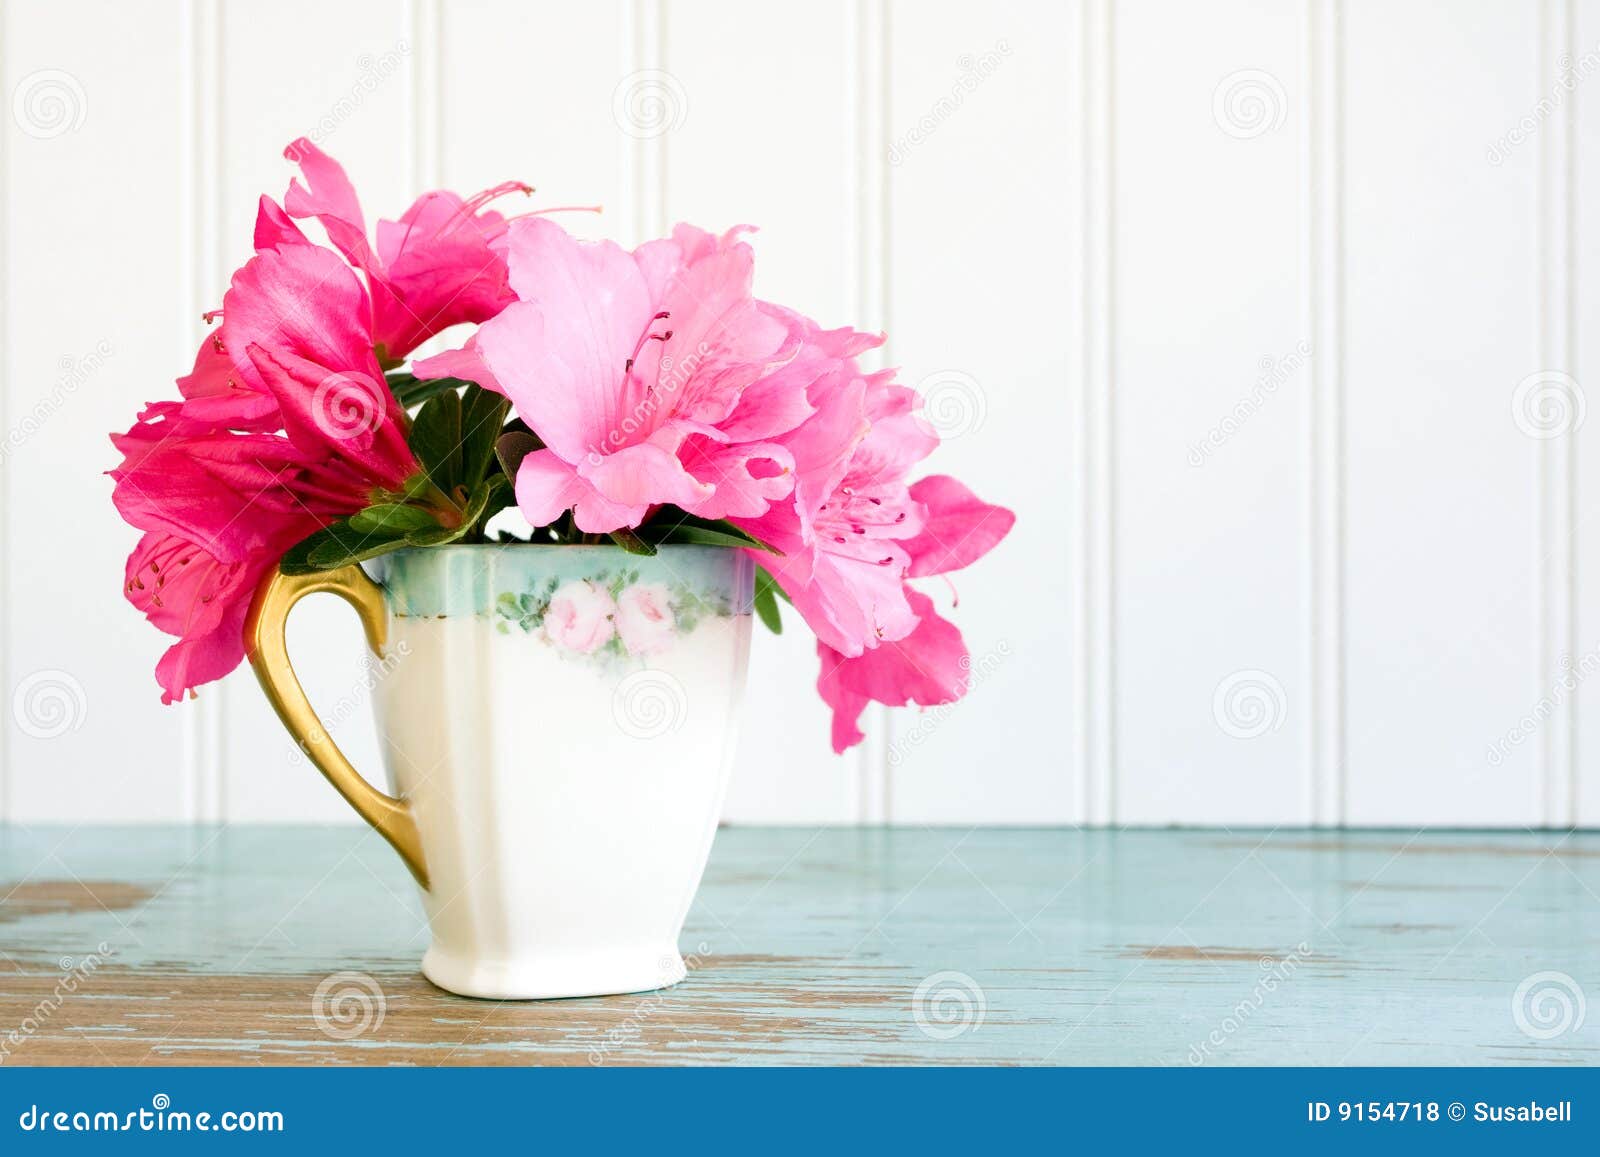 teacup with azalea flowers